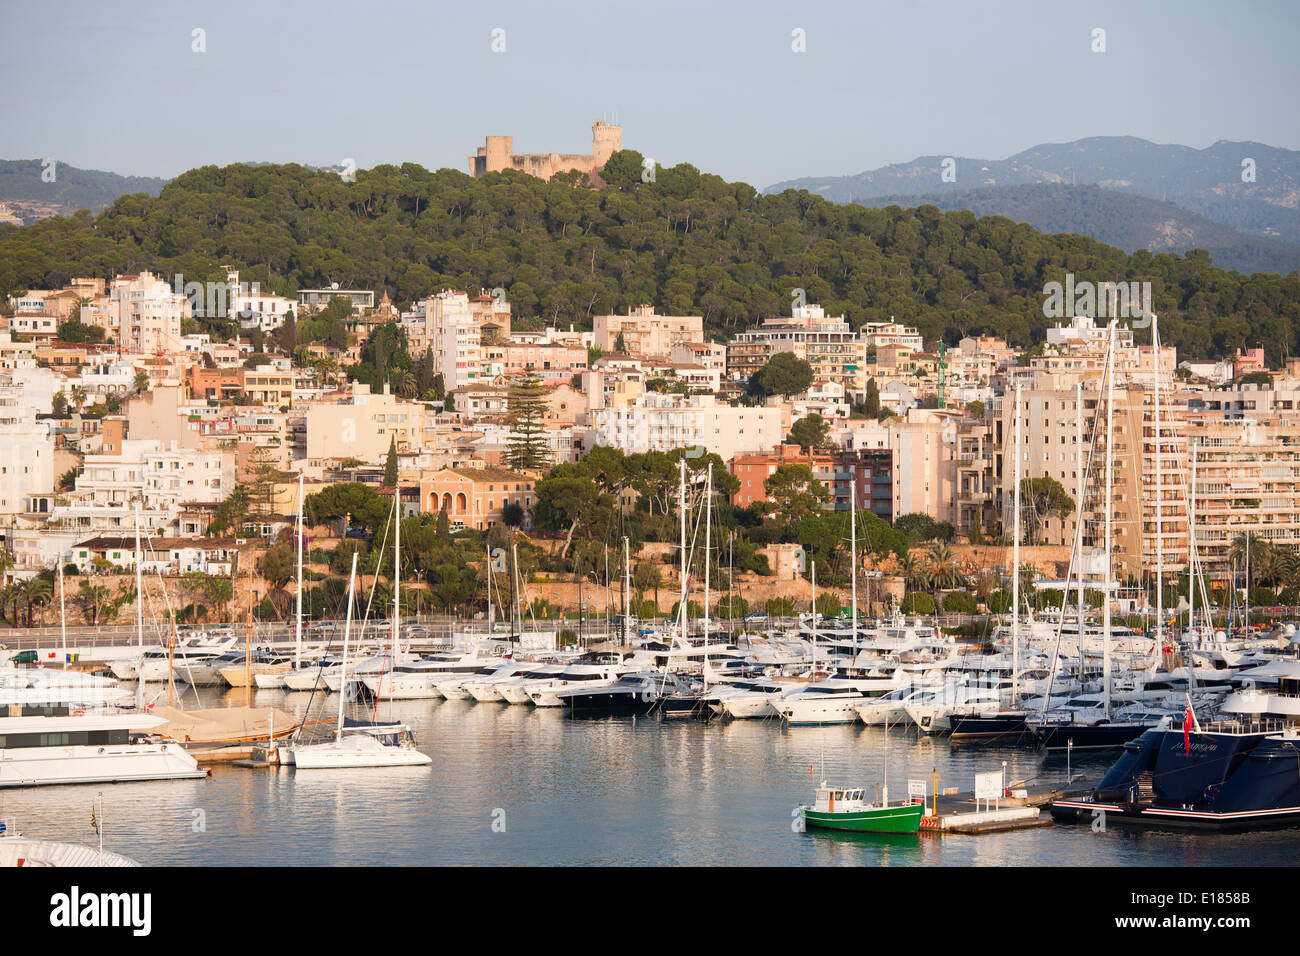 panoramic view with bellver castle, palma de mallorca, mallorca island, spain, europe Stock Photo